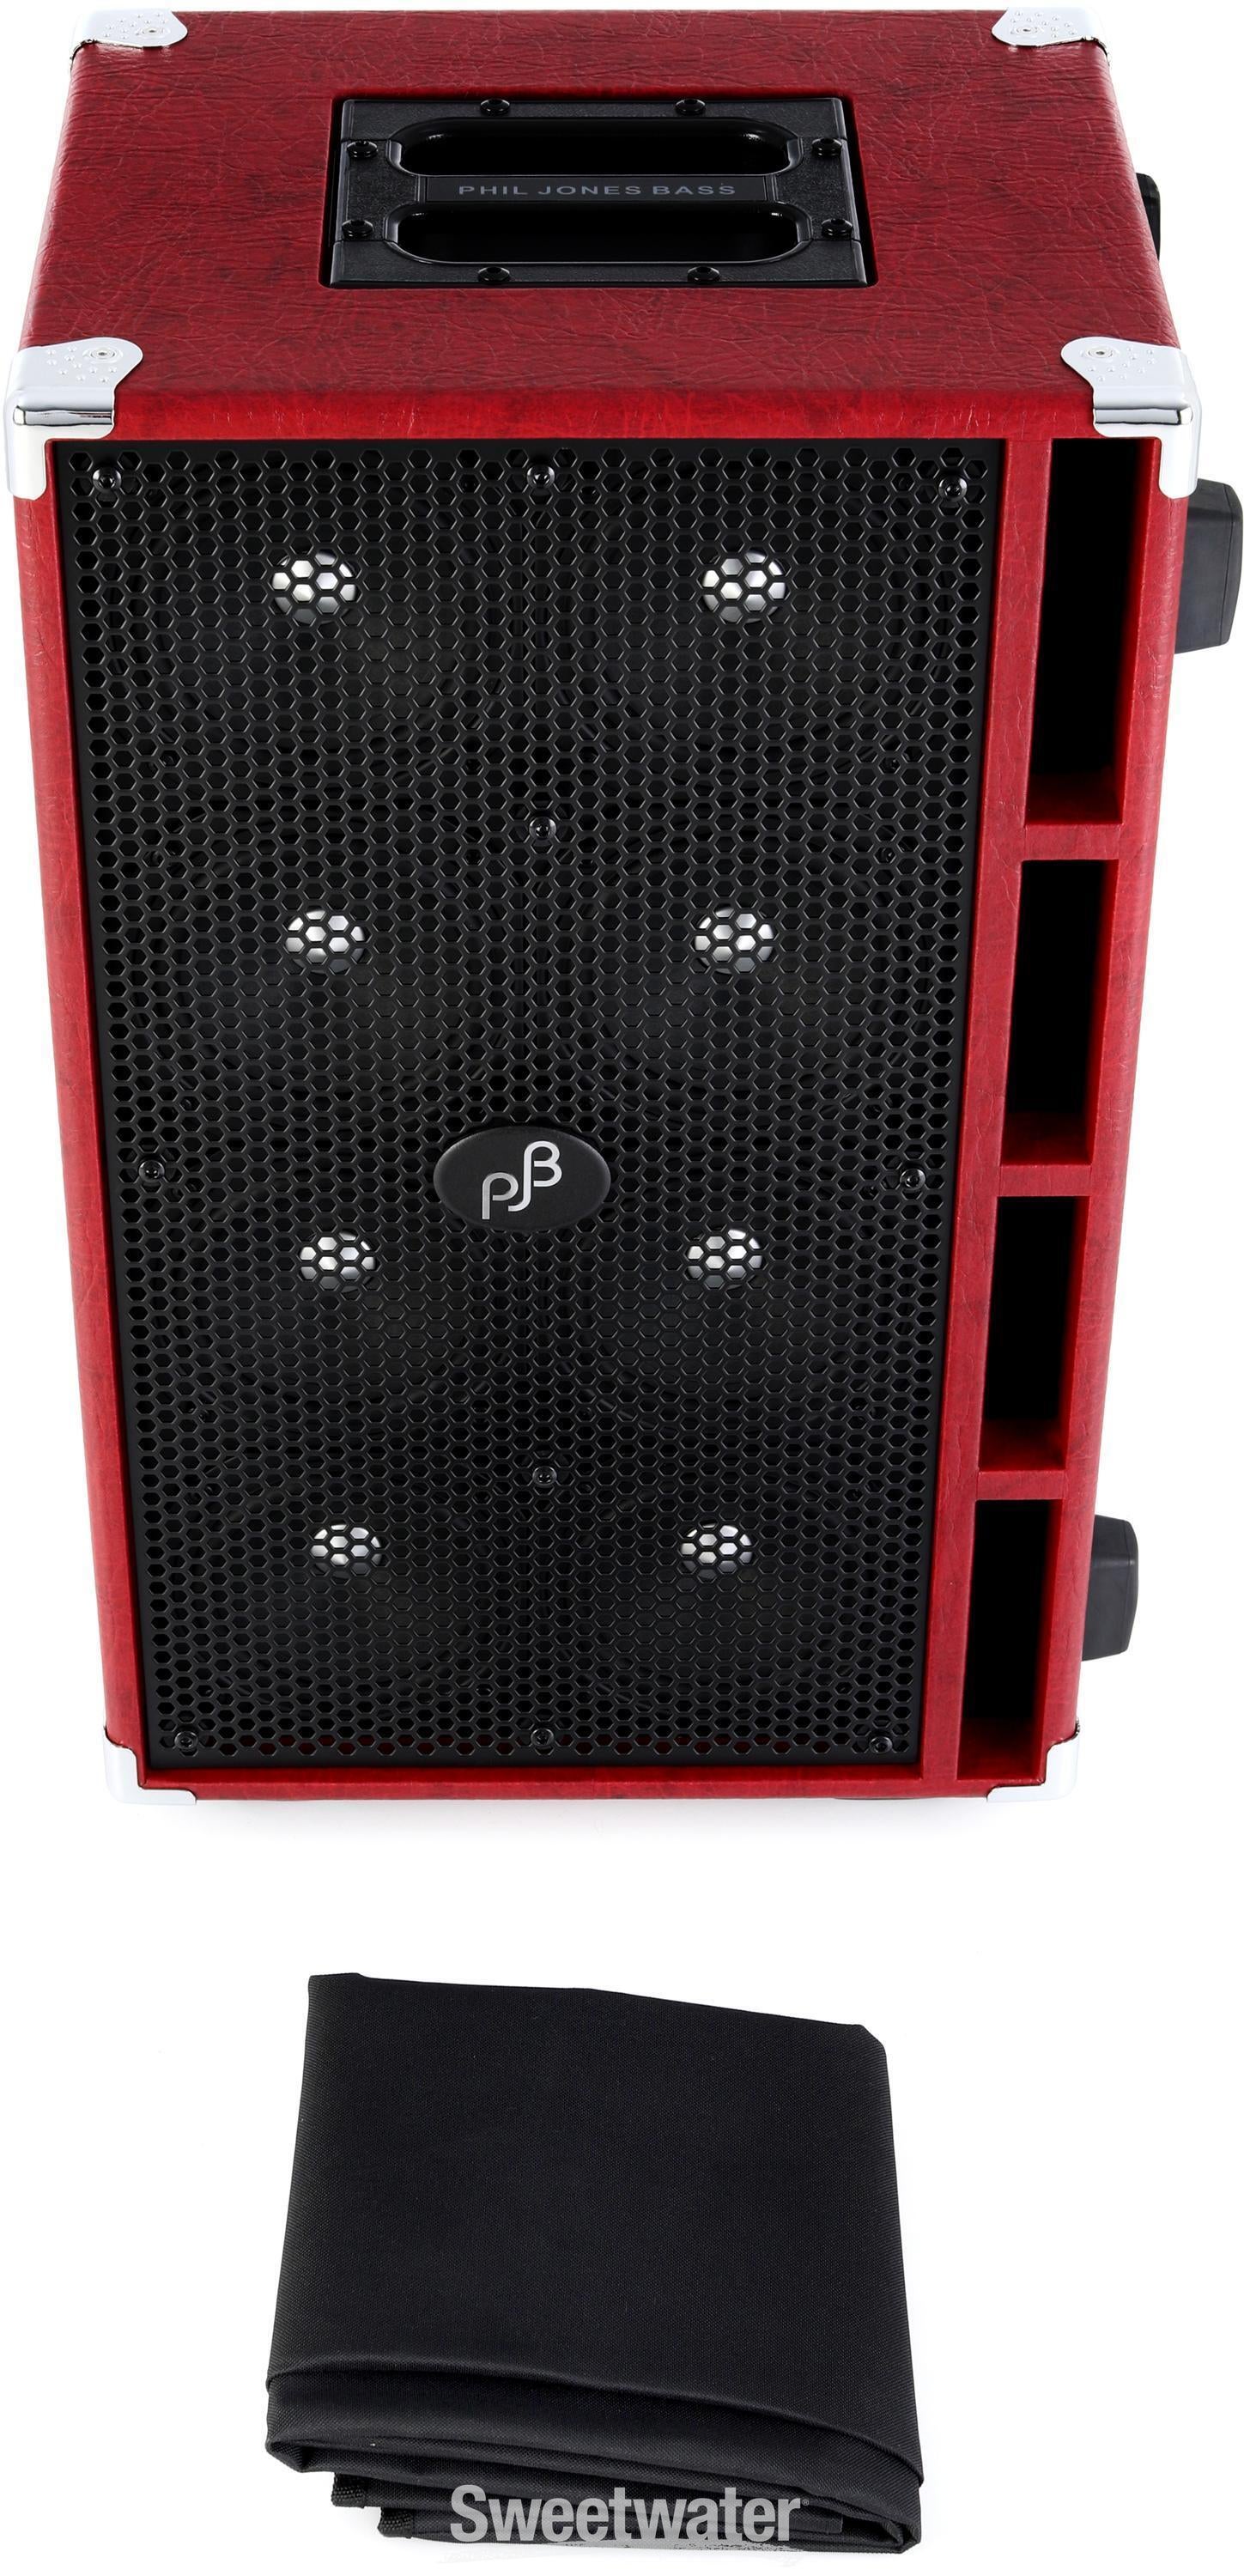 Phil Jones Bass Compact 8 8 x 5-inch 800-watt Bass Cabinet - Red